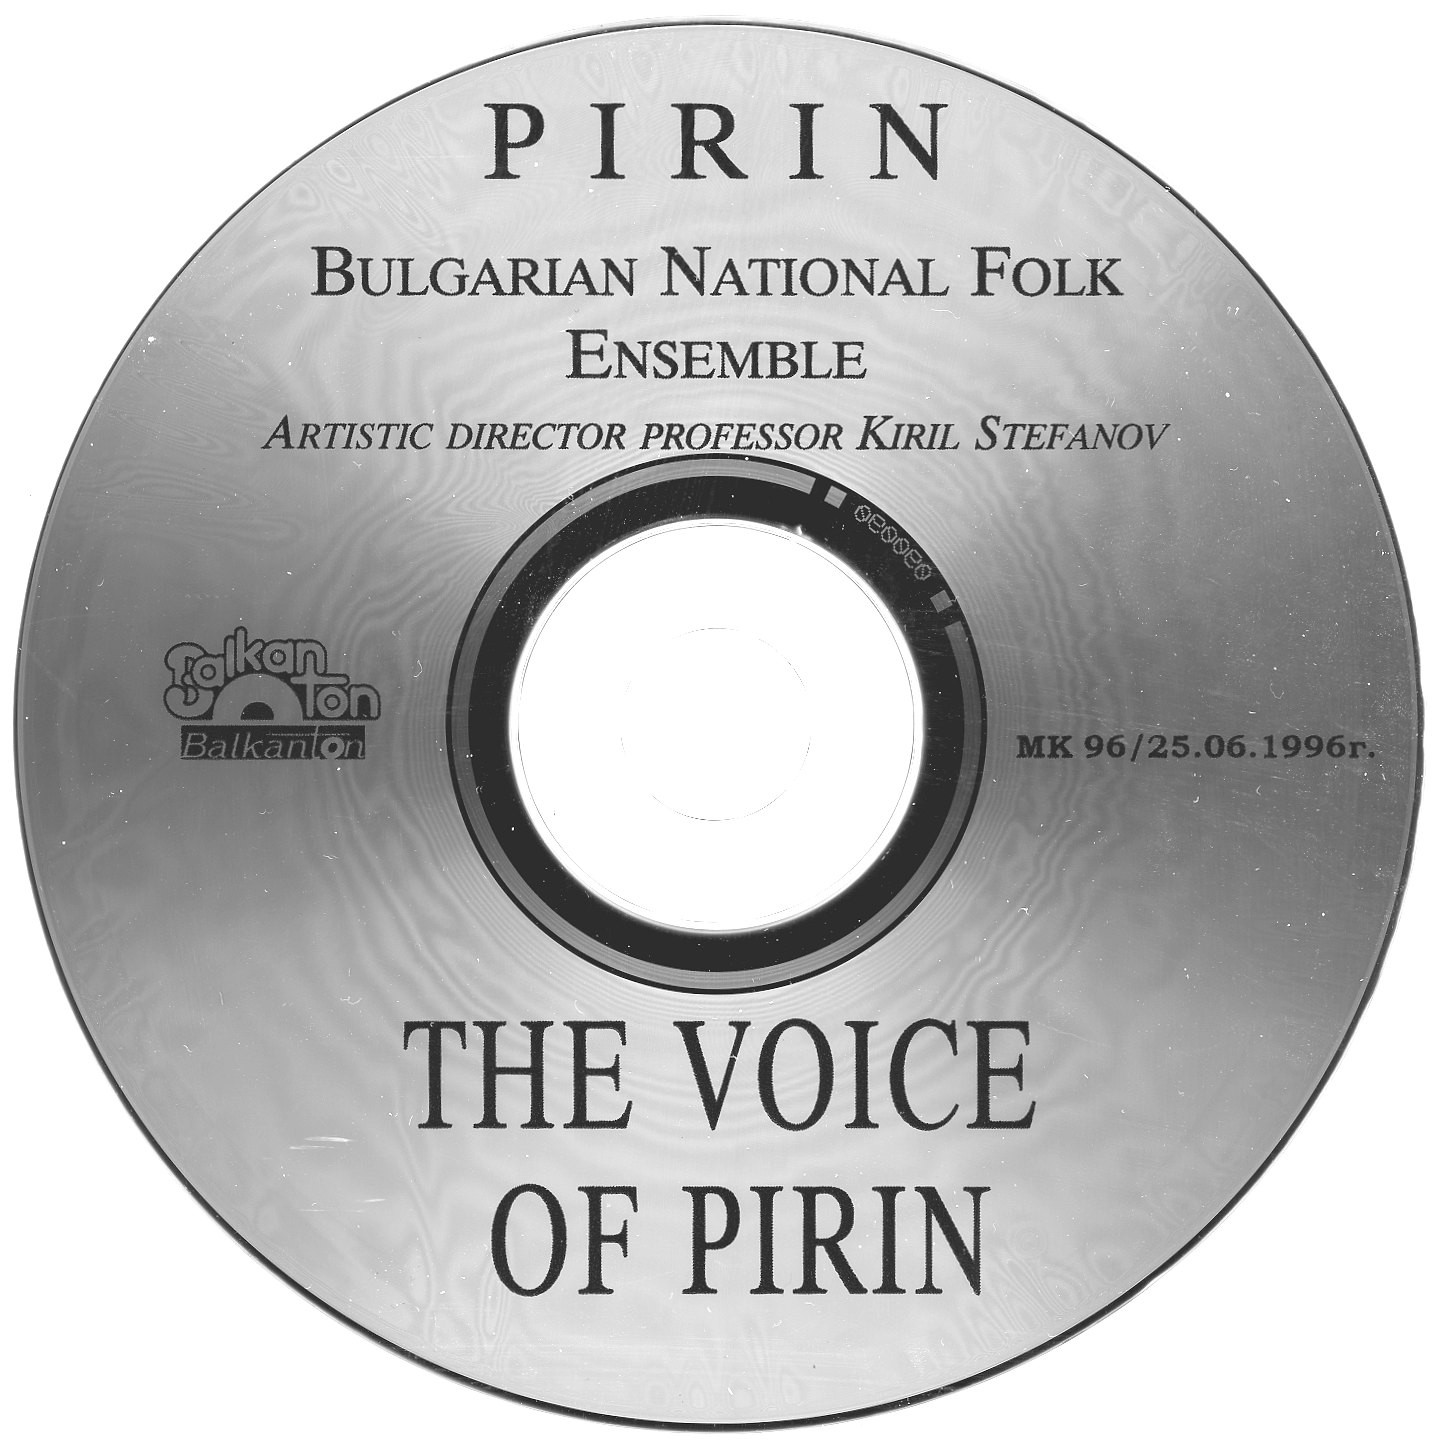 Pirin State Ensemble for Folk Songs and Dances